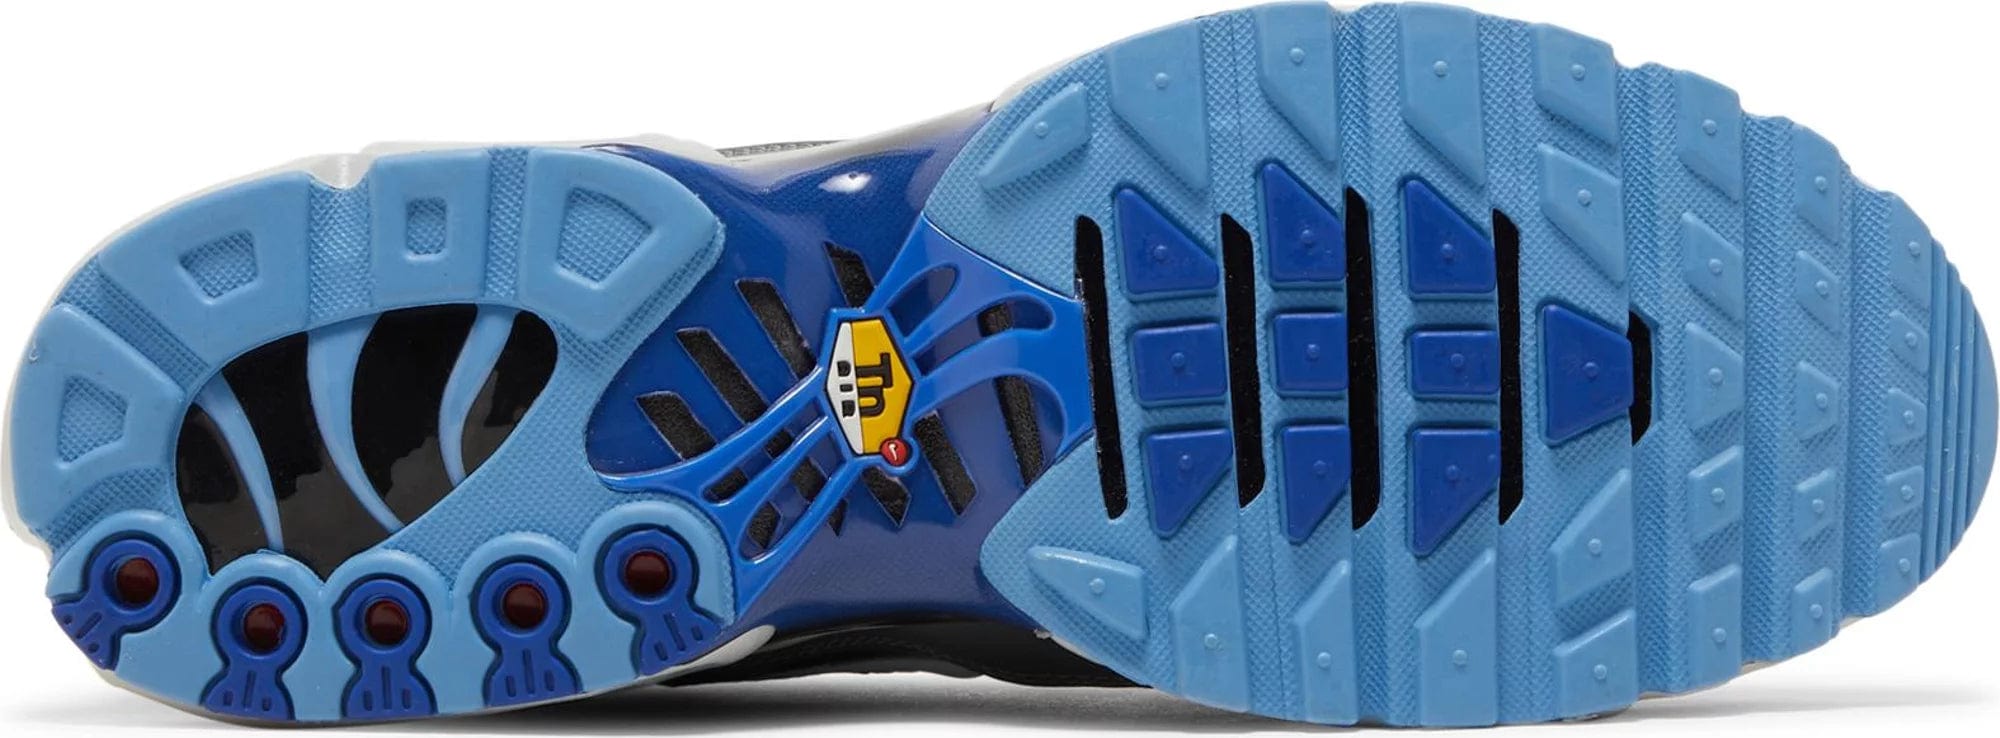 sneakers Nike Air Max Plus TN Black Royal Blue Men's